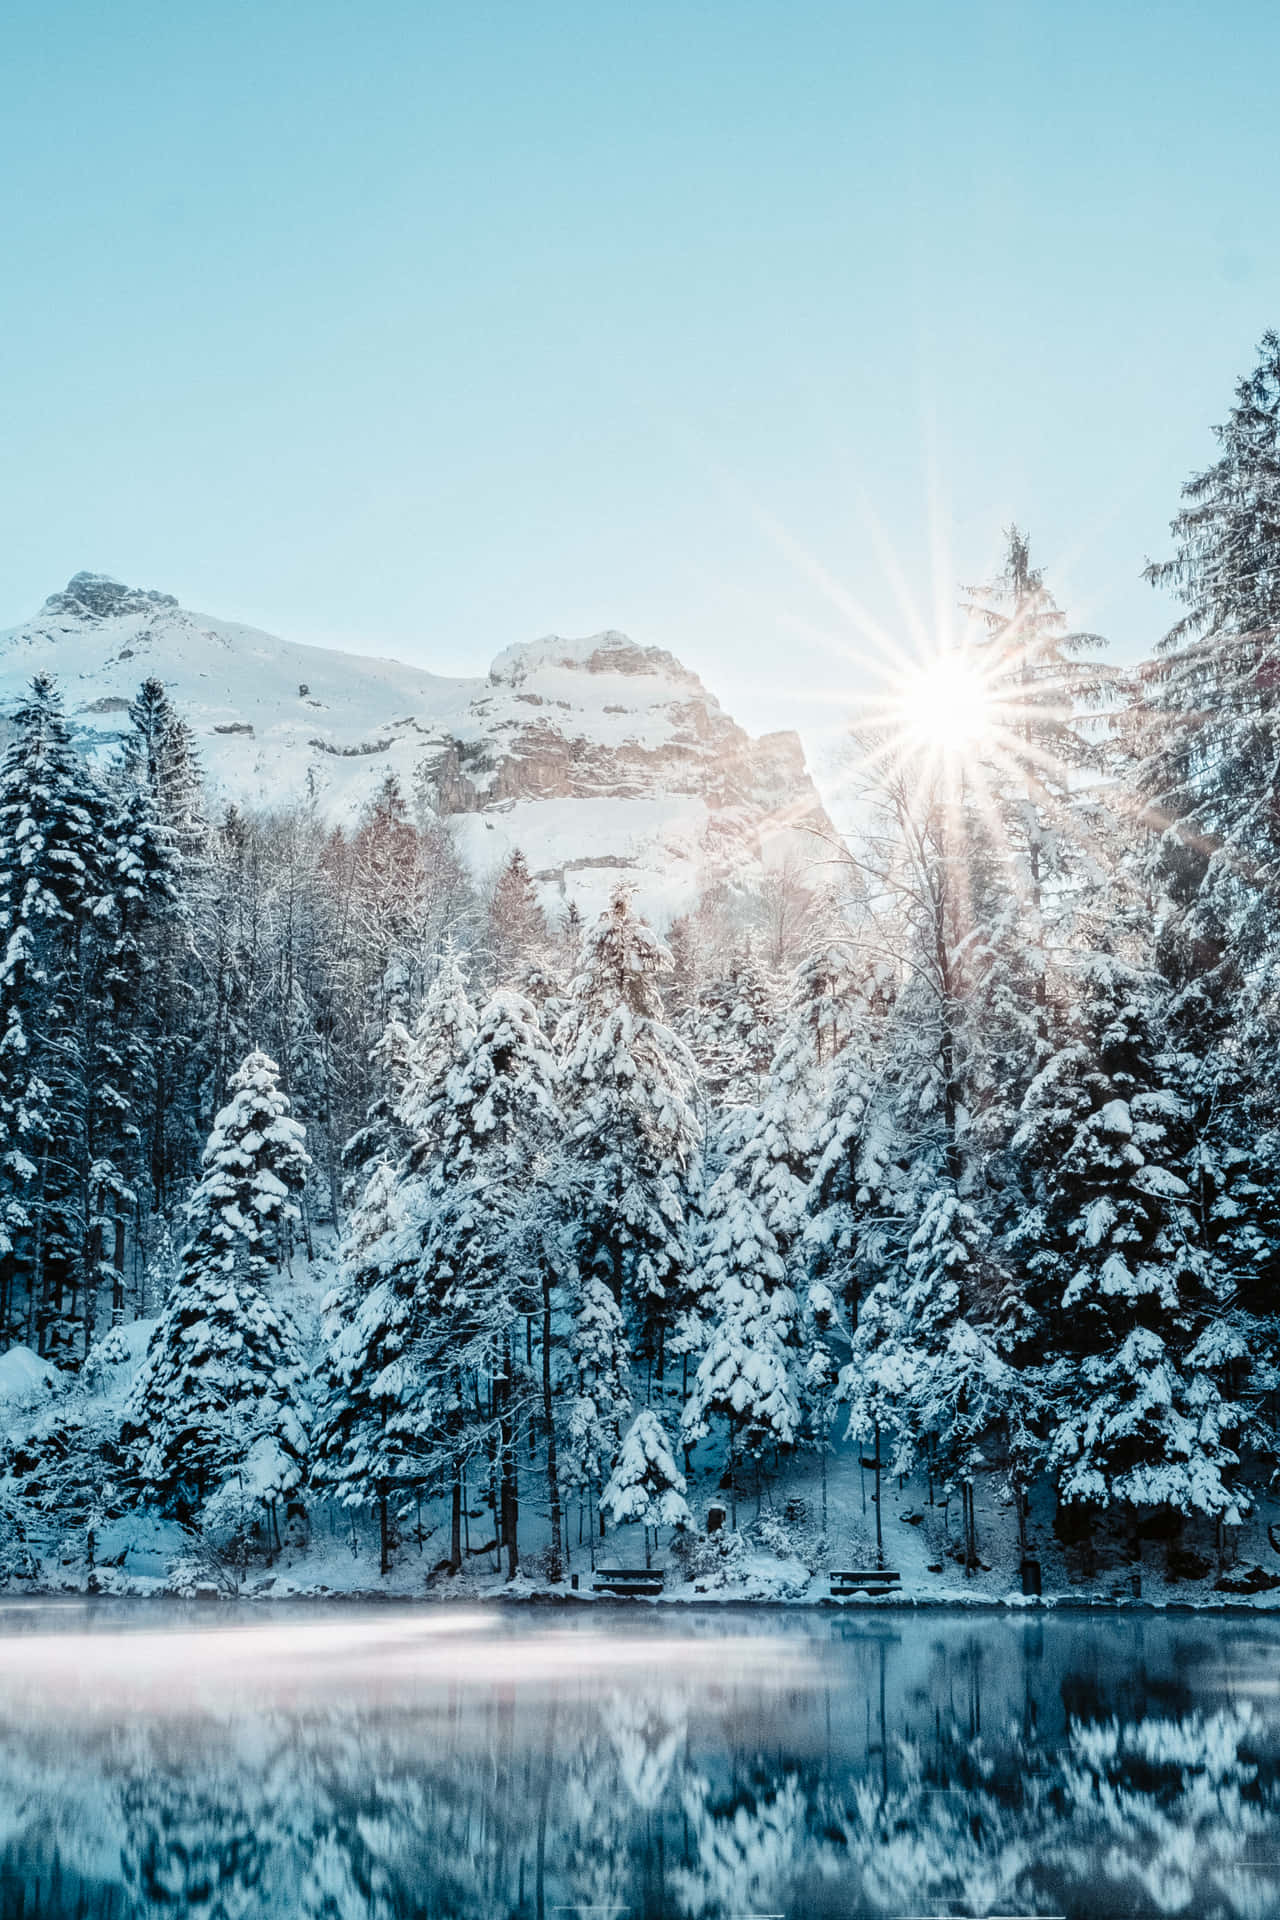  Schnee Hintergrundbild 1280x1920. Bilder Von Snow Aesthetic